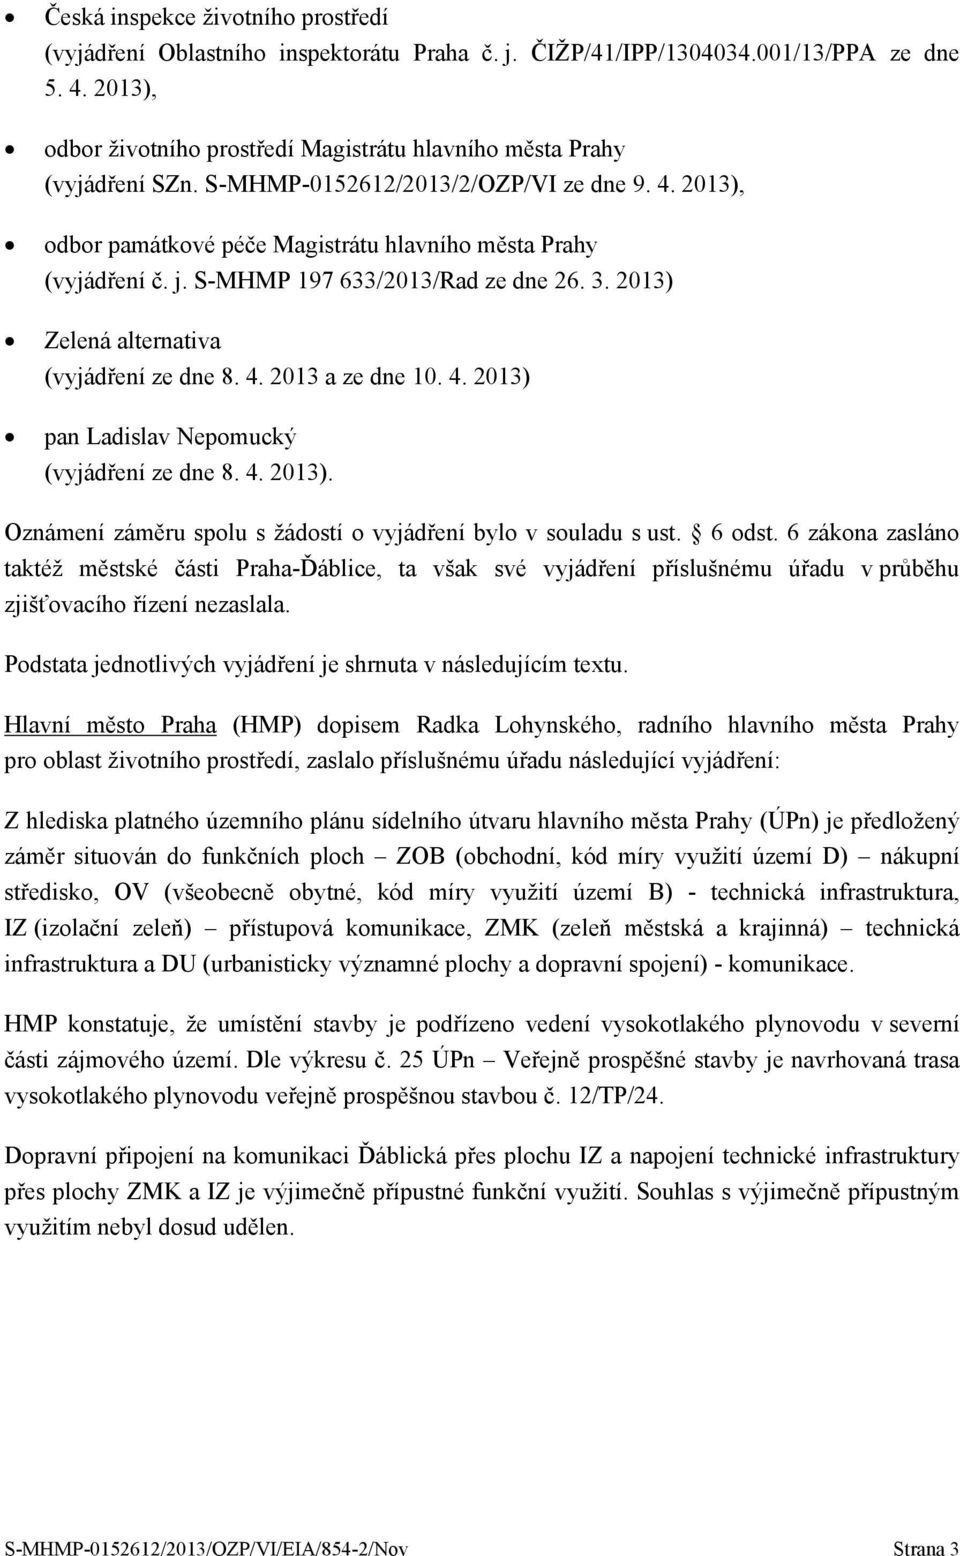 S-MHMP 197 633/2013/Rad ze dne 26. 3. 2013) Zelená alternativa (vyjádření ze dne 8. 4. 2013 a ze dne 10. 4. 2013) pan Ladislav Nepomucký (vyjádření ze dne 8. 4. 2013). Oznámení záměru spolu s žádostí o vyjádření bylo v souladu s ust.